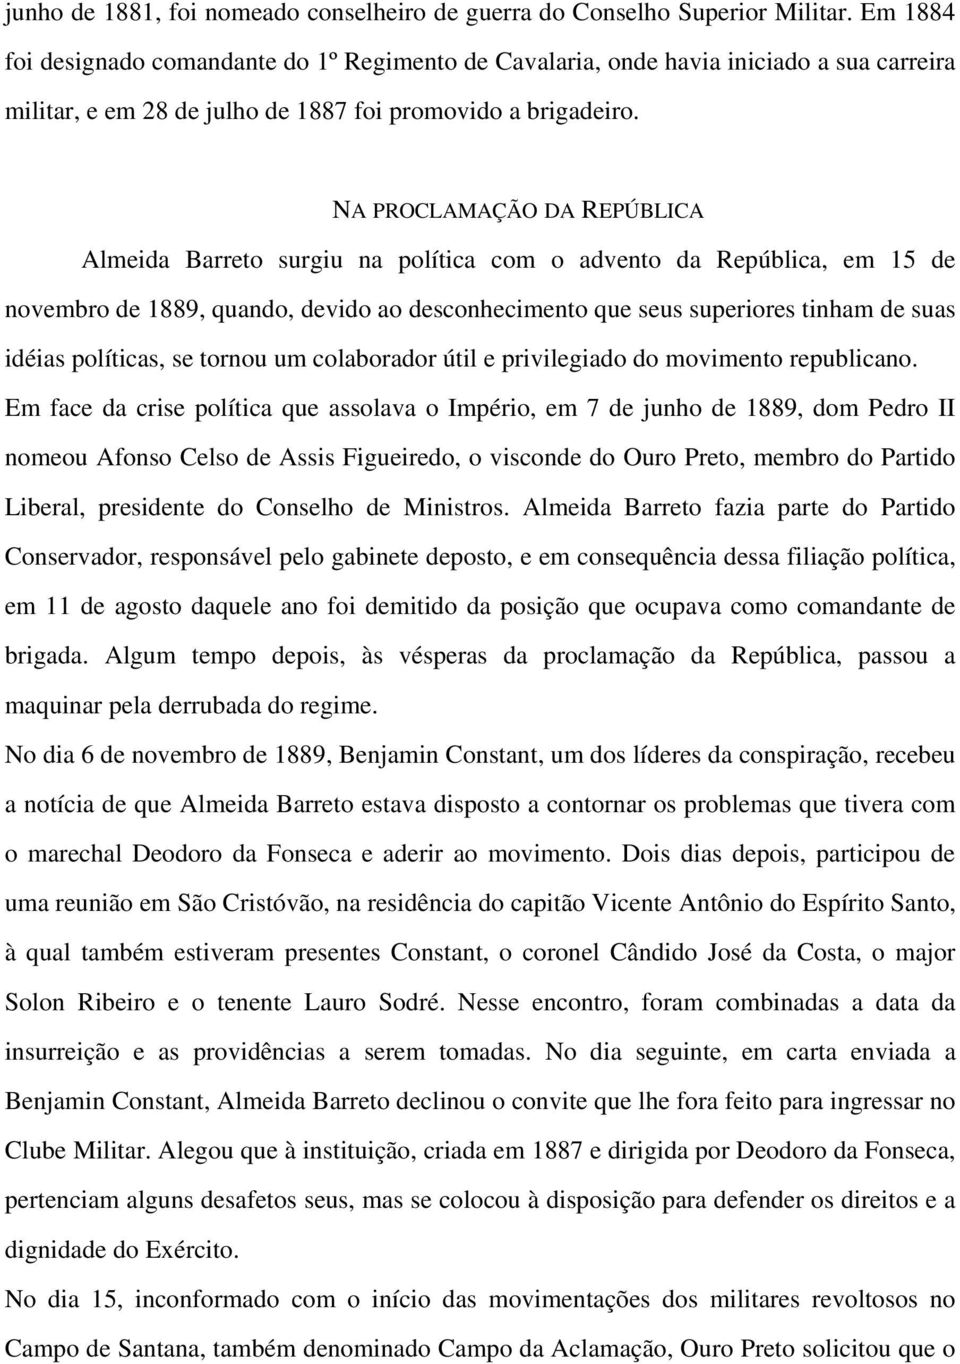 NA PROCLAMAÇÃO DA REPÚBLICA Almeida Barreto surgiu na política com o advento da República, em 15 de novembro de 1889, quando, devido ao desconhecimento que seus superiores tinham de suas idéias